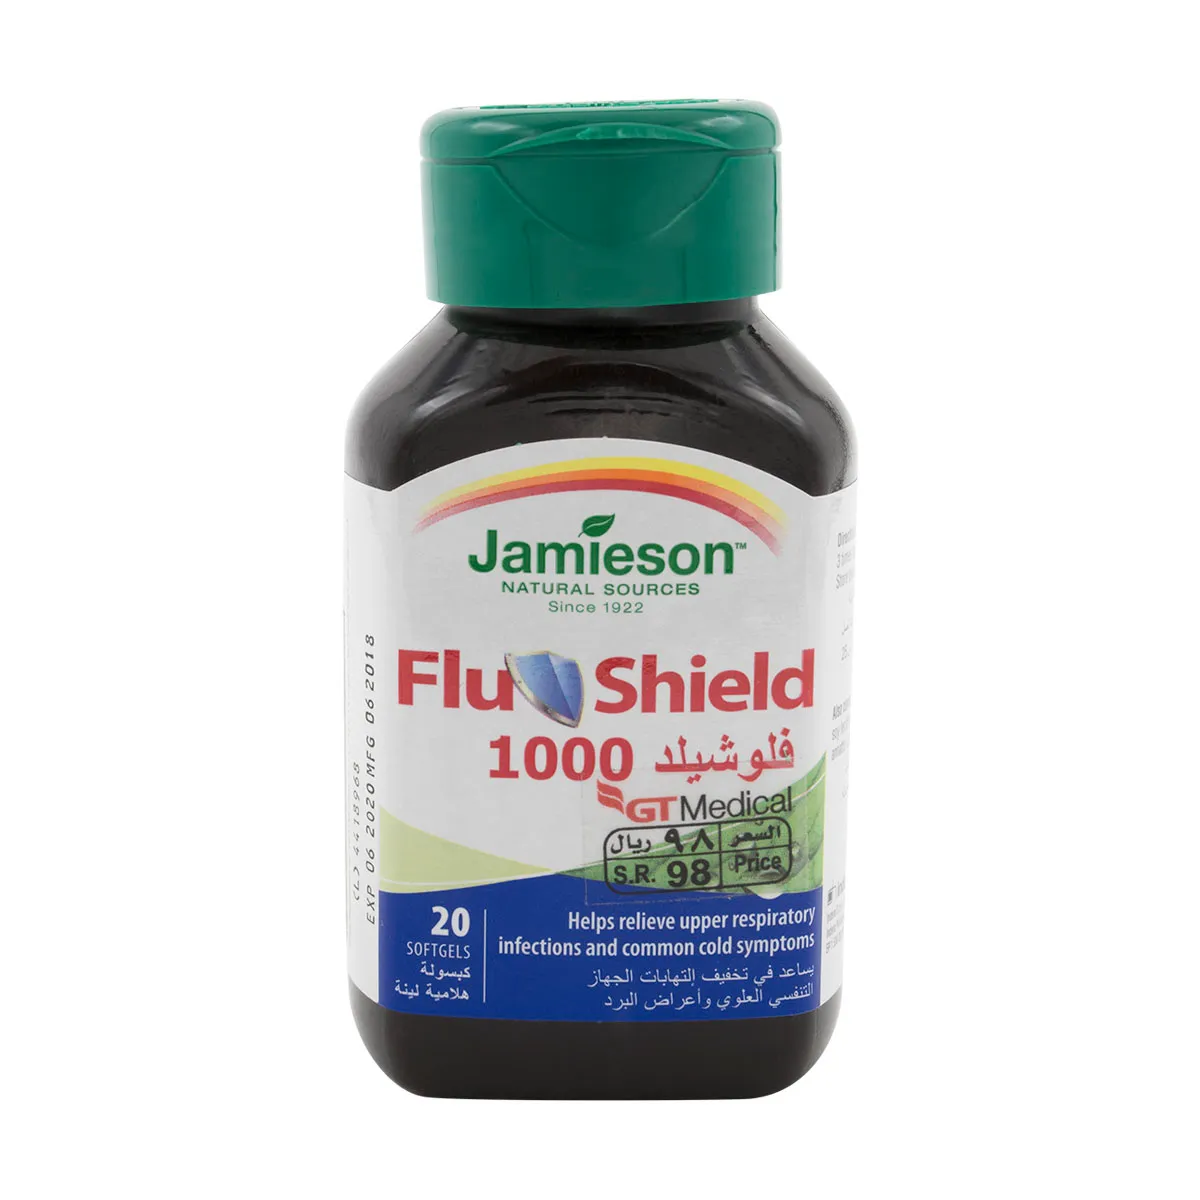 Flushield 1000 - 20 Softgels Caps